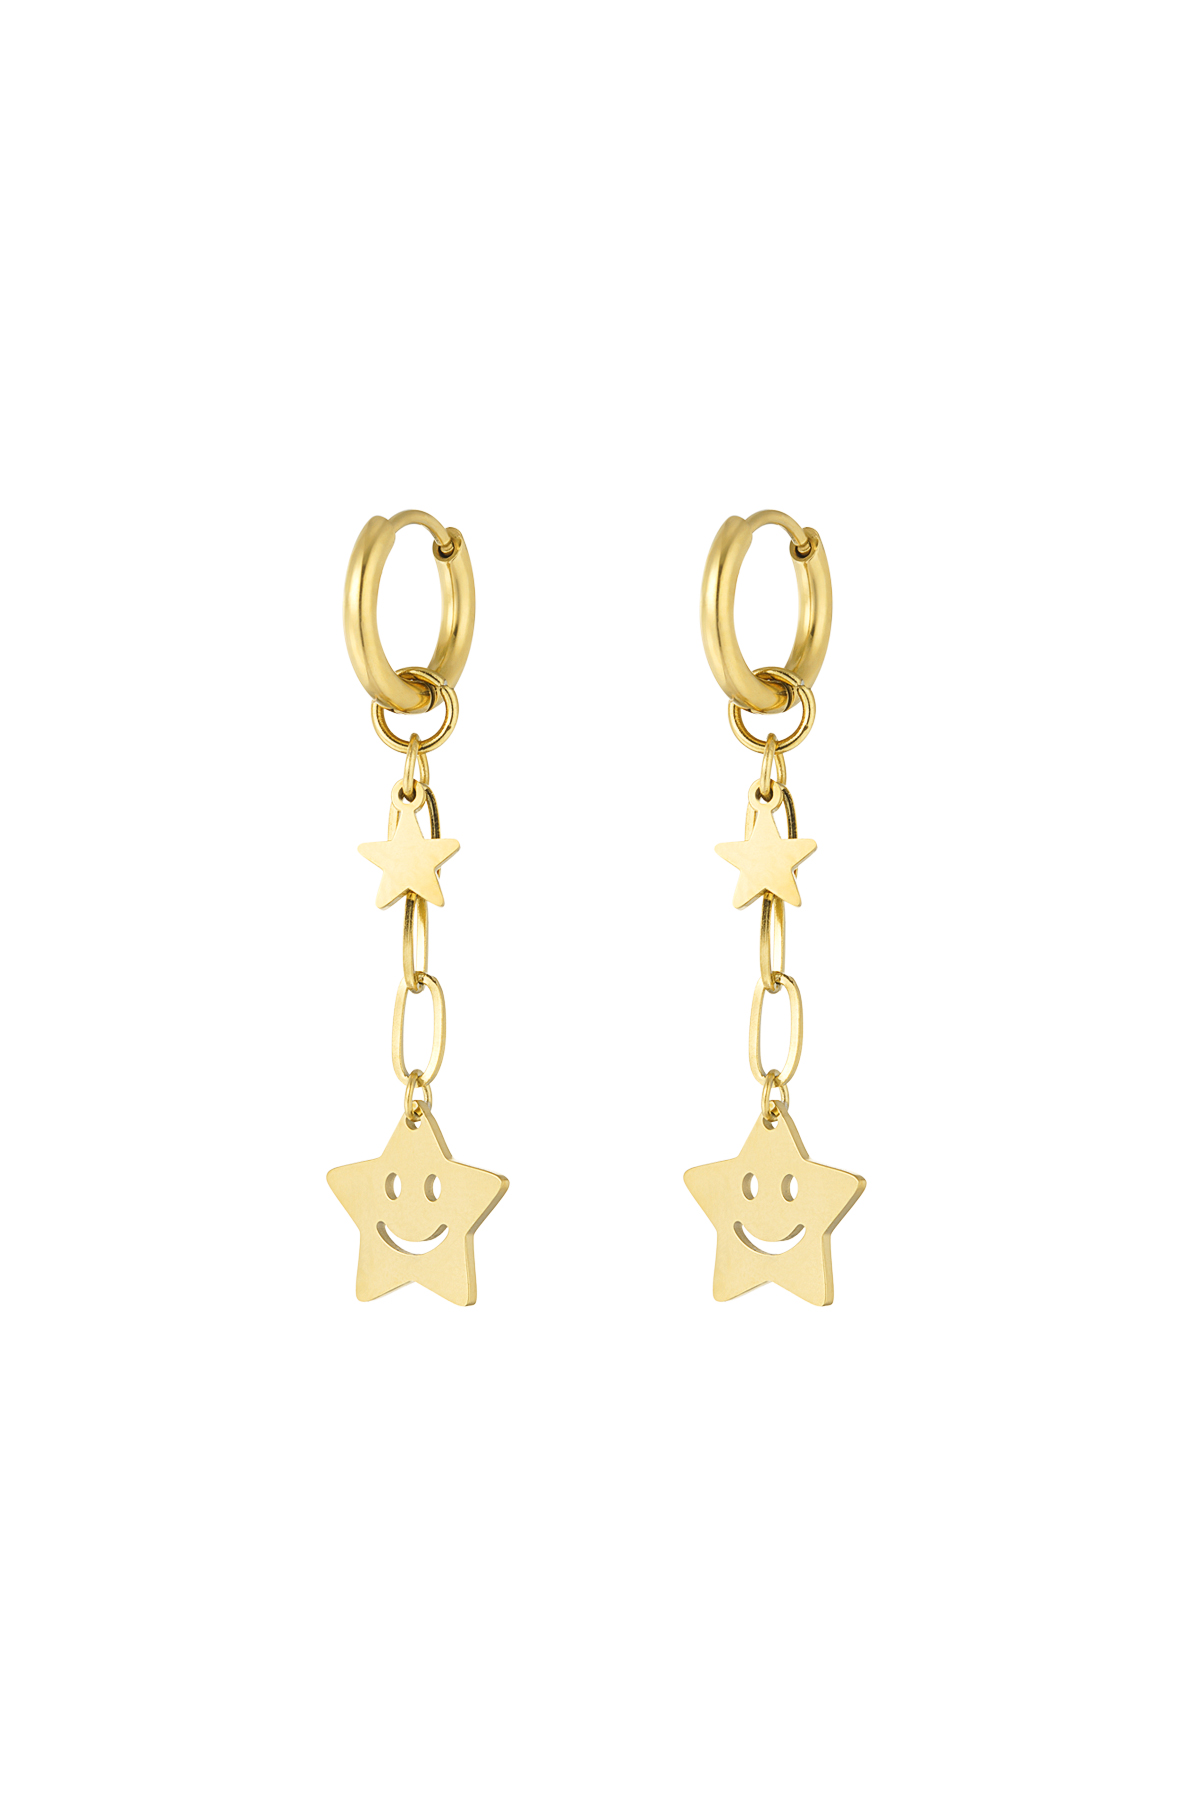 Happy star earrings - gold  